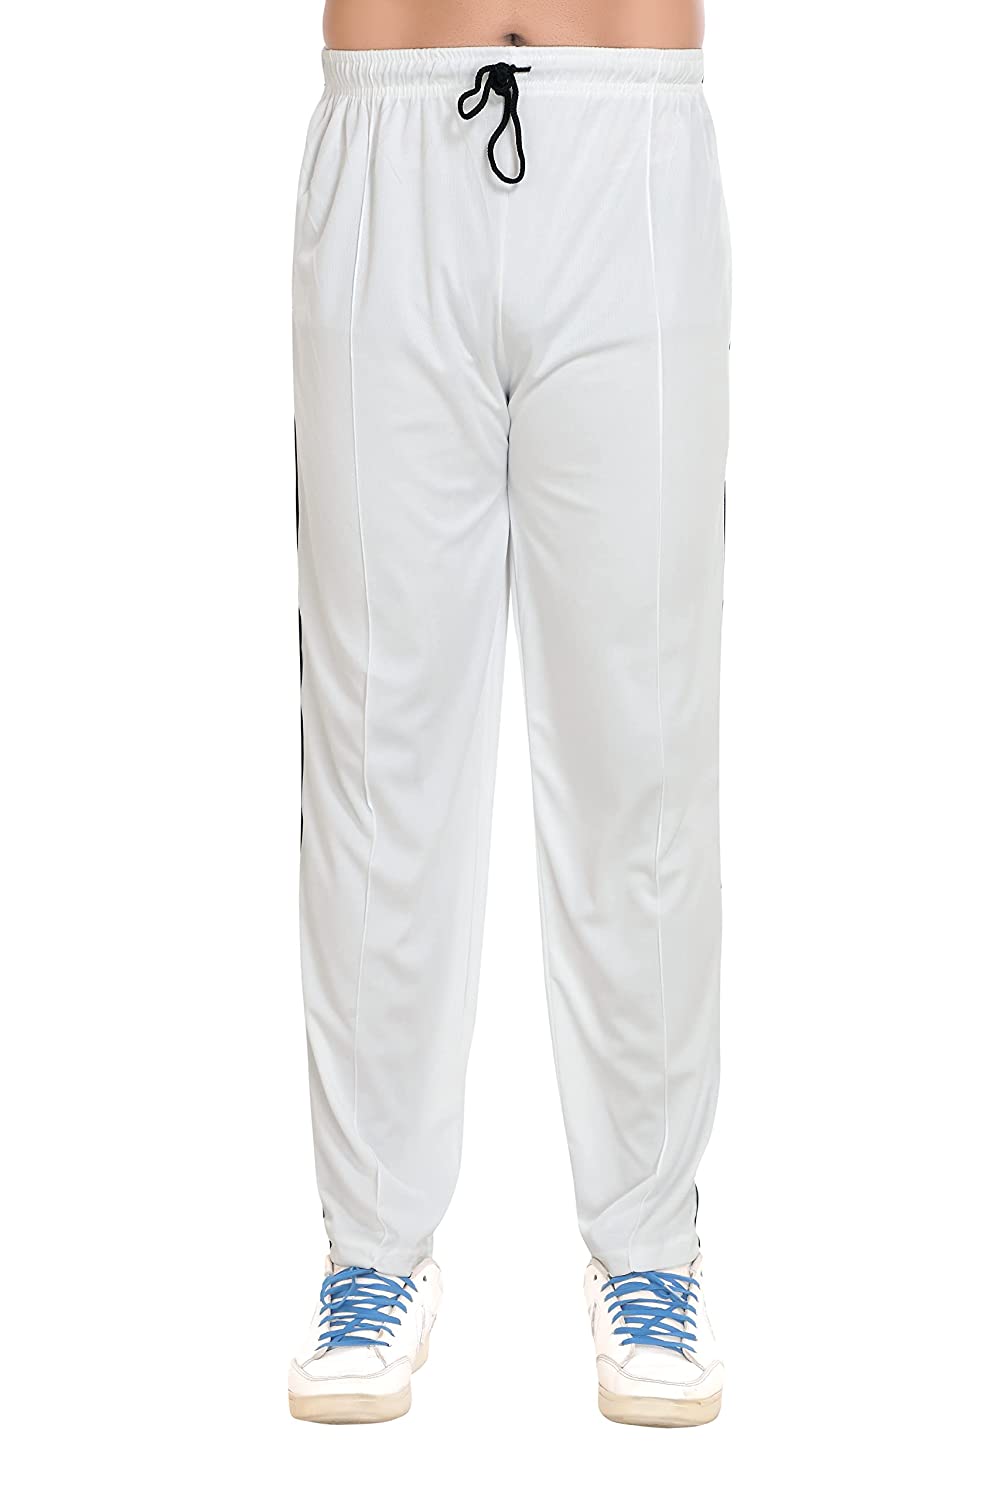 White Cricket Dress Full Sleeve For Men – Jalandhar Style